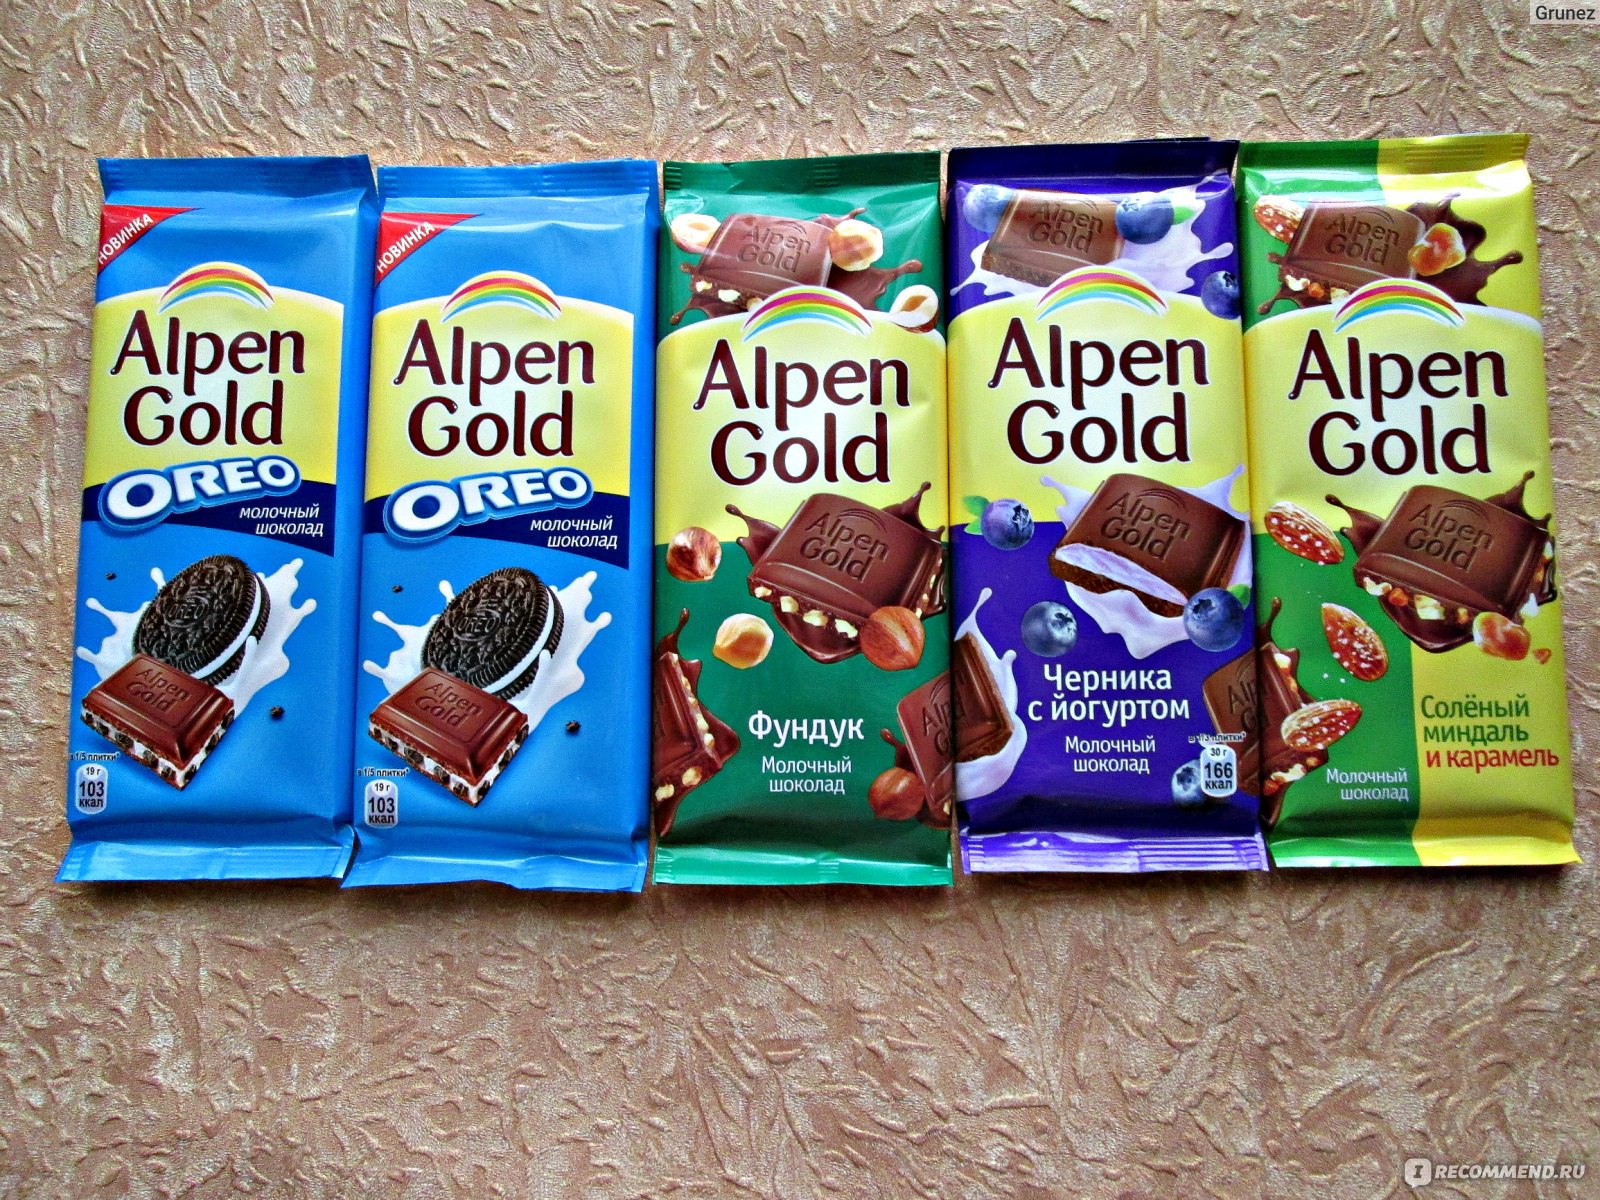 Анпенгольд шоколад. Шоколад Альпен Гольд. Шоколад Альпен Голд вкусы. Шоколадка Альпен Гольд. Шоколад Альпен Гольд разные вкусы.